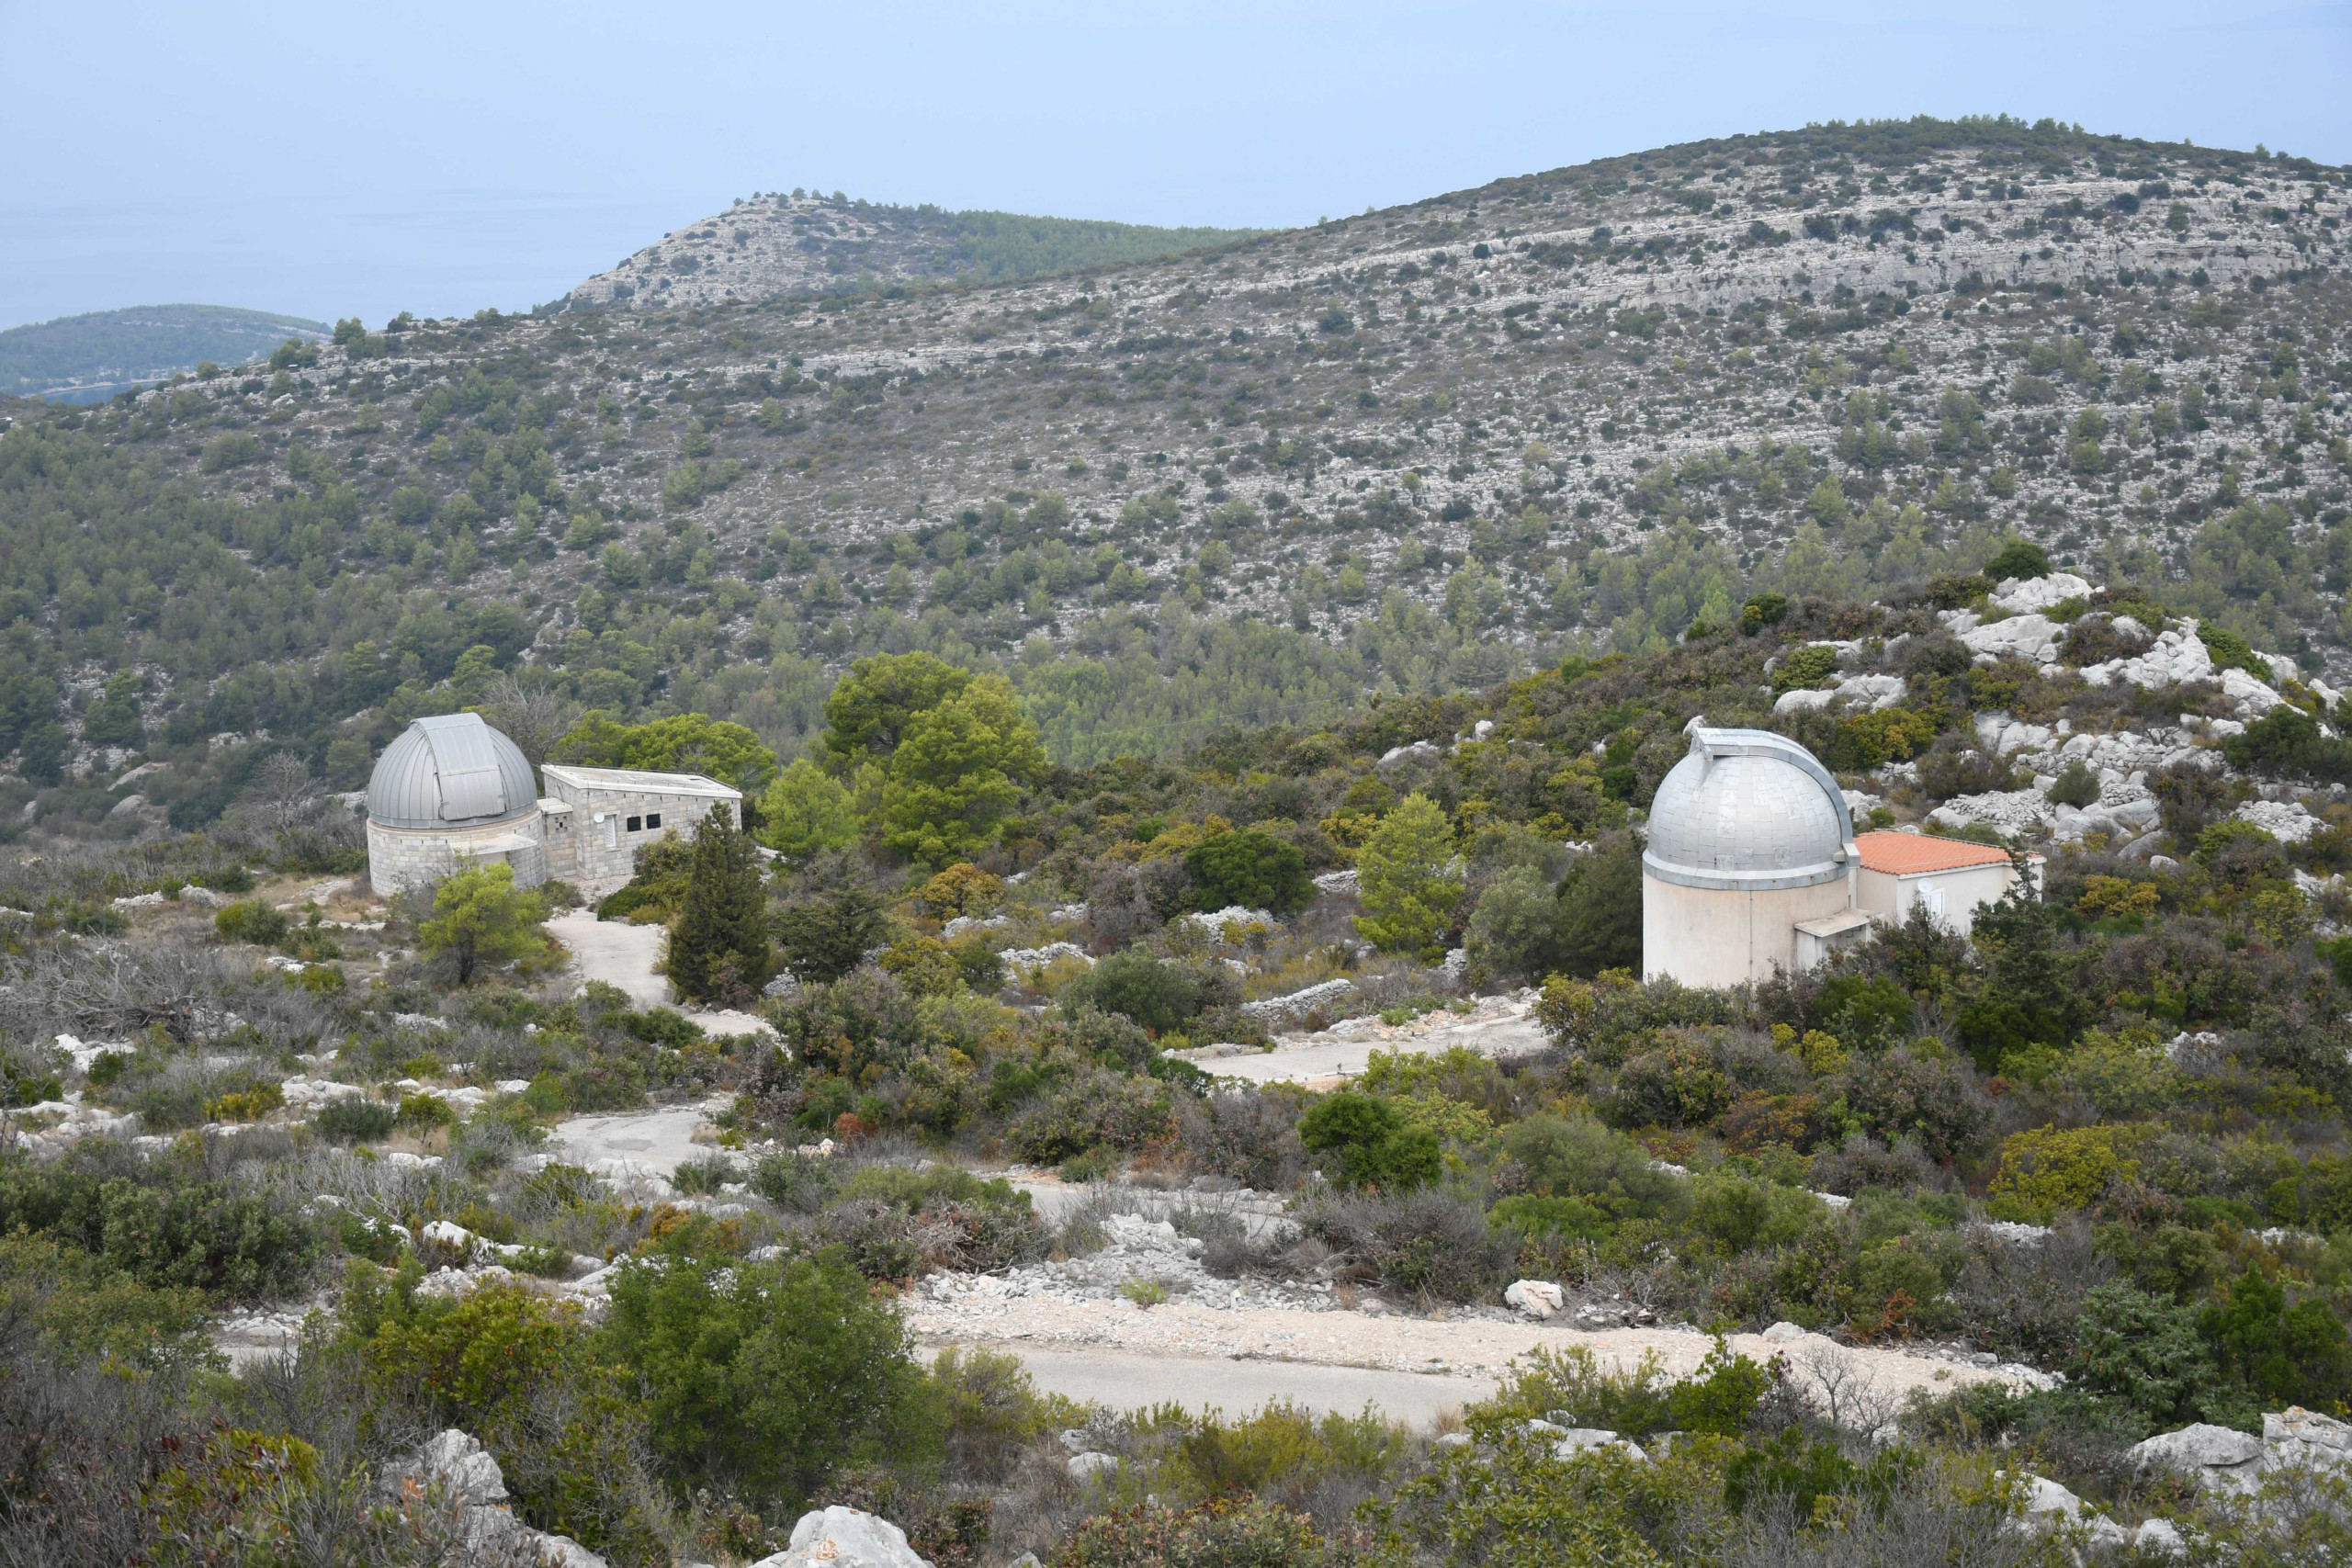 Perzeidi su 13. i 14. listopada posjetili Opservatorij Hvar. Za sada imaju jednu kupolu više od Križevaca. (foto R.Matić)